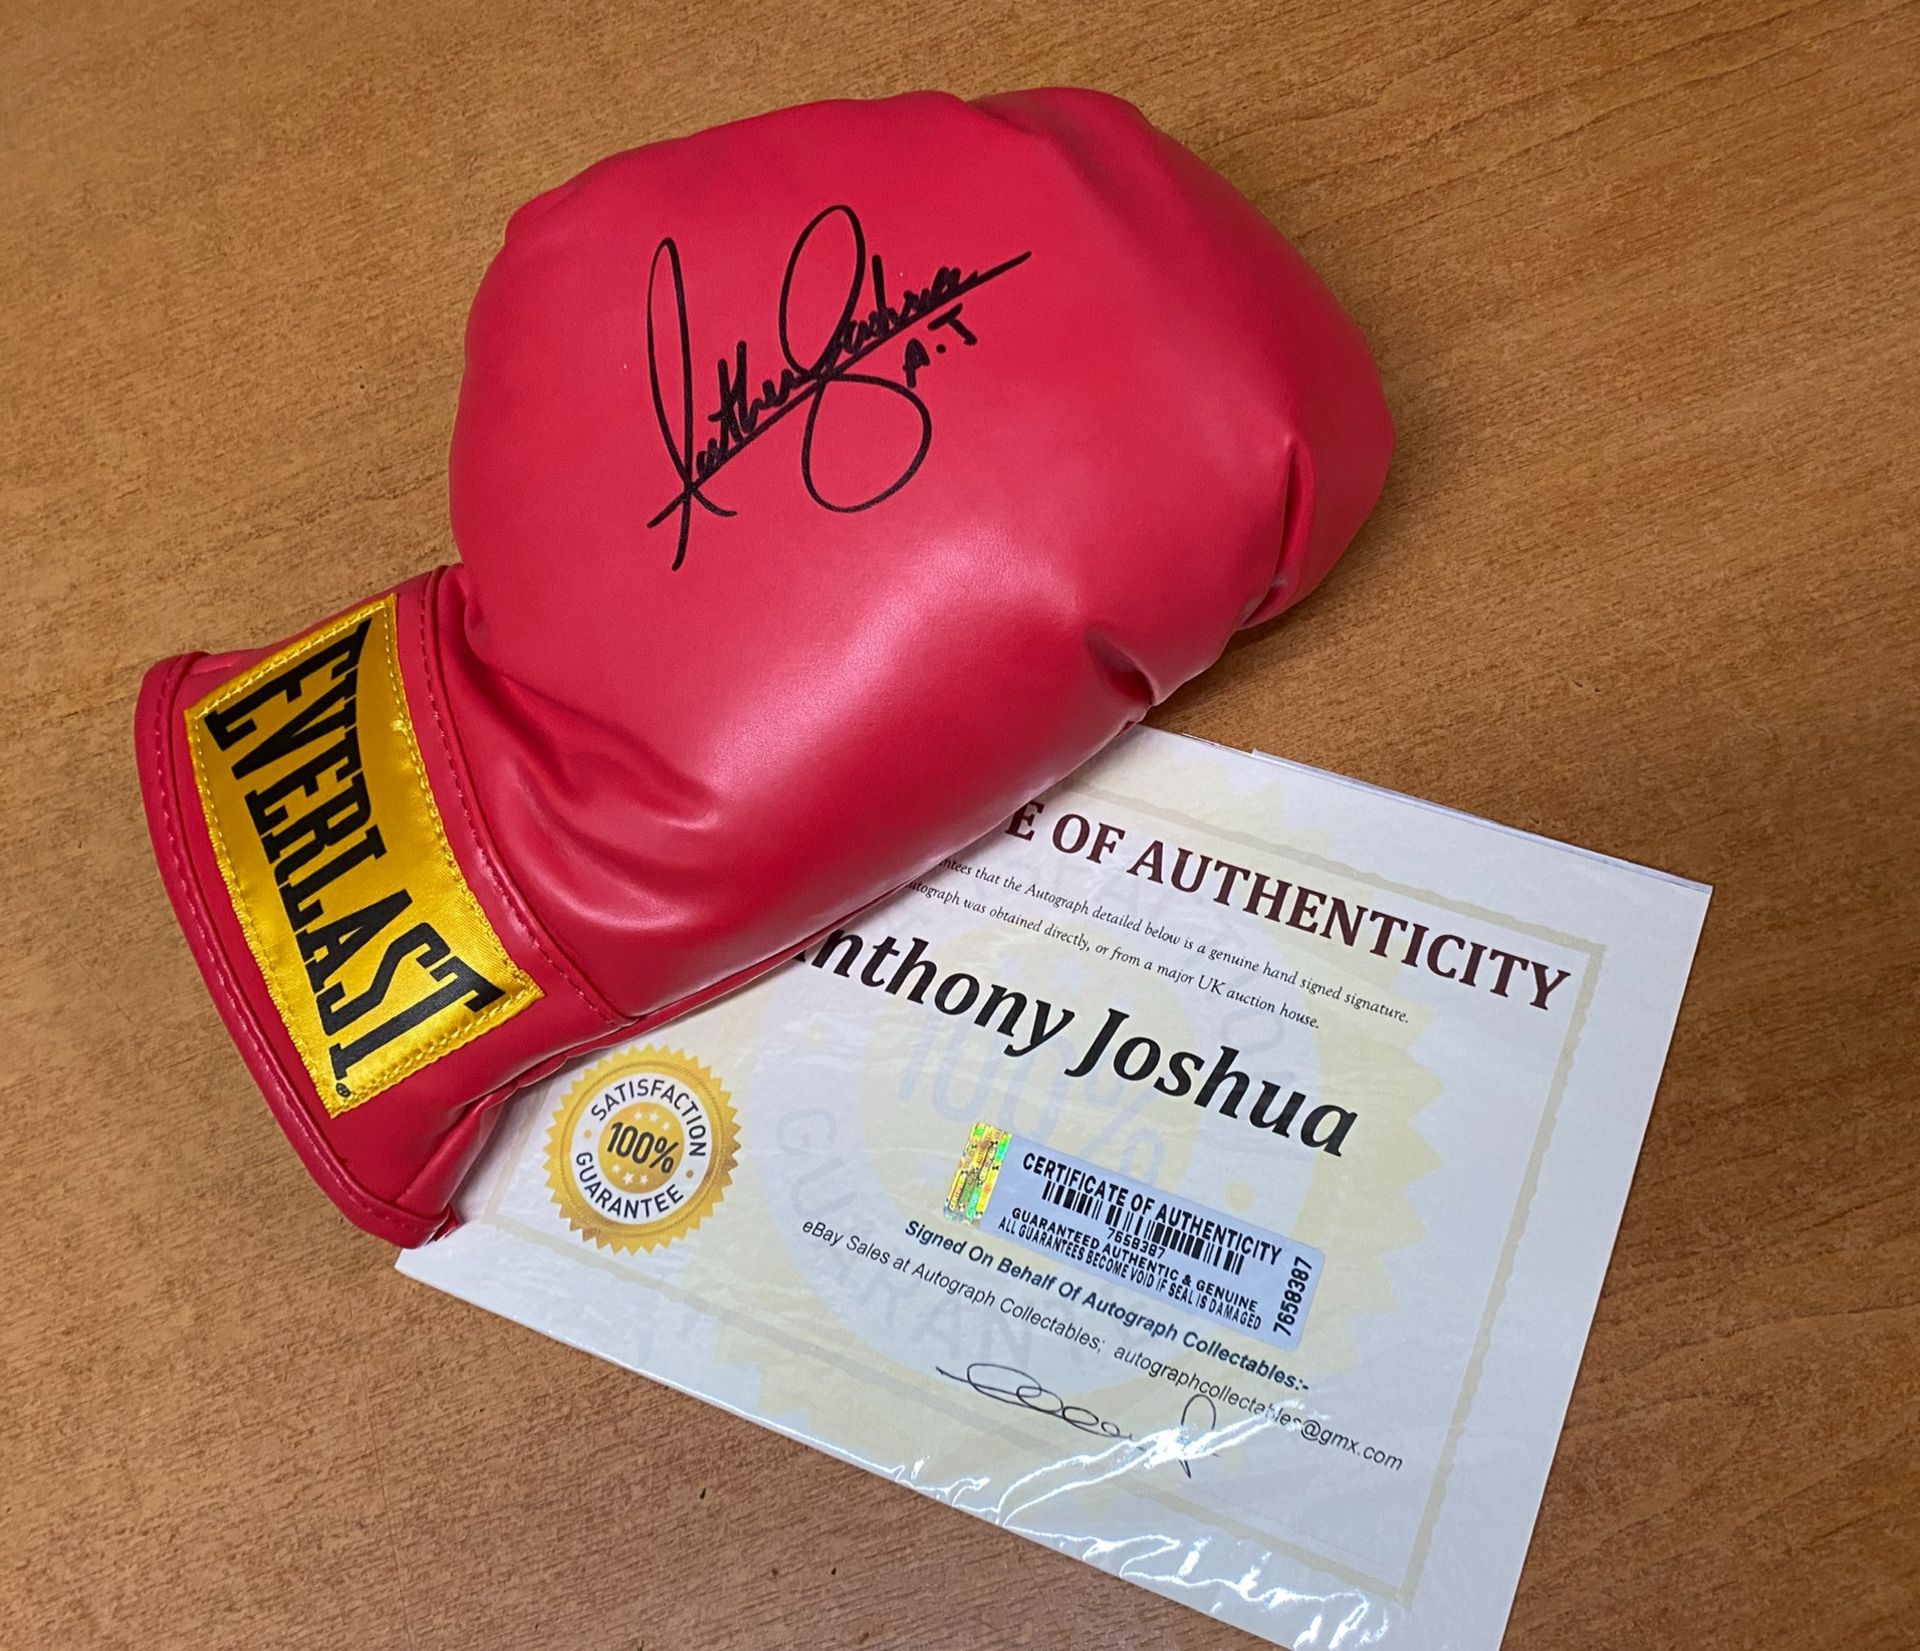 Anthony Joshua Signed Boxing Glove - Image 2 of 3